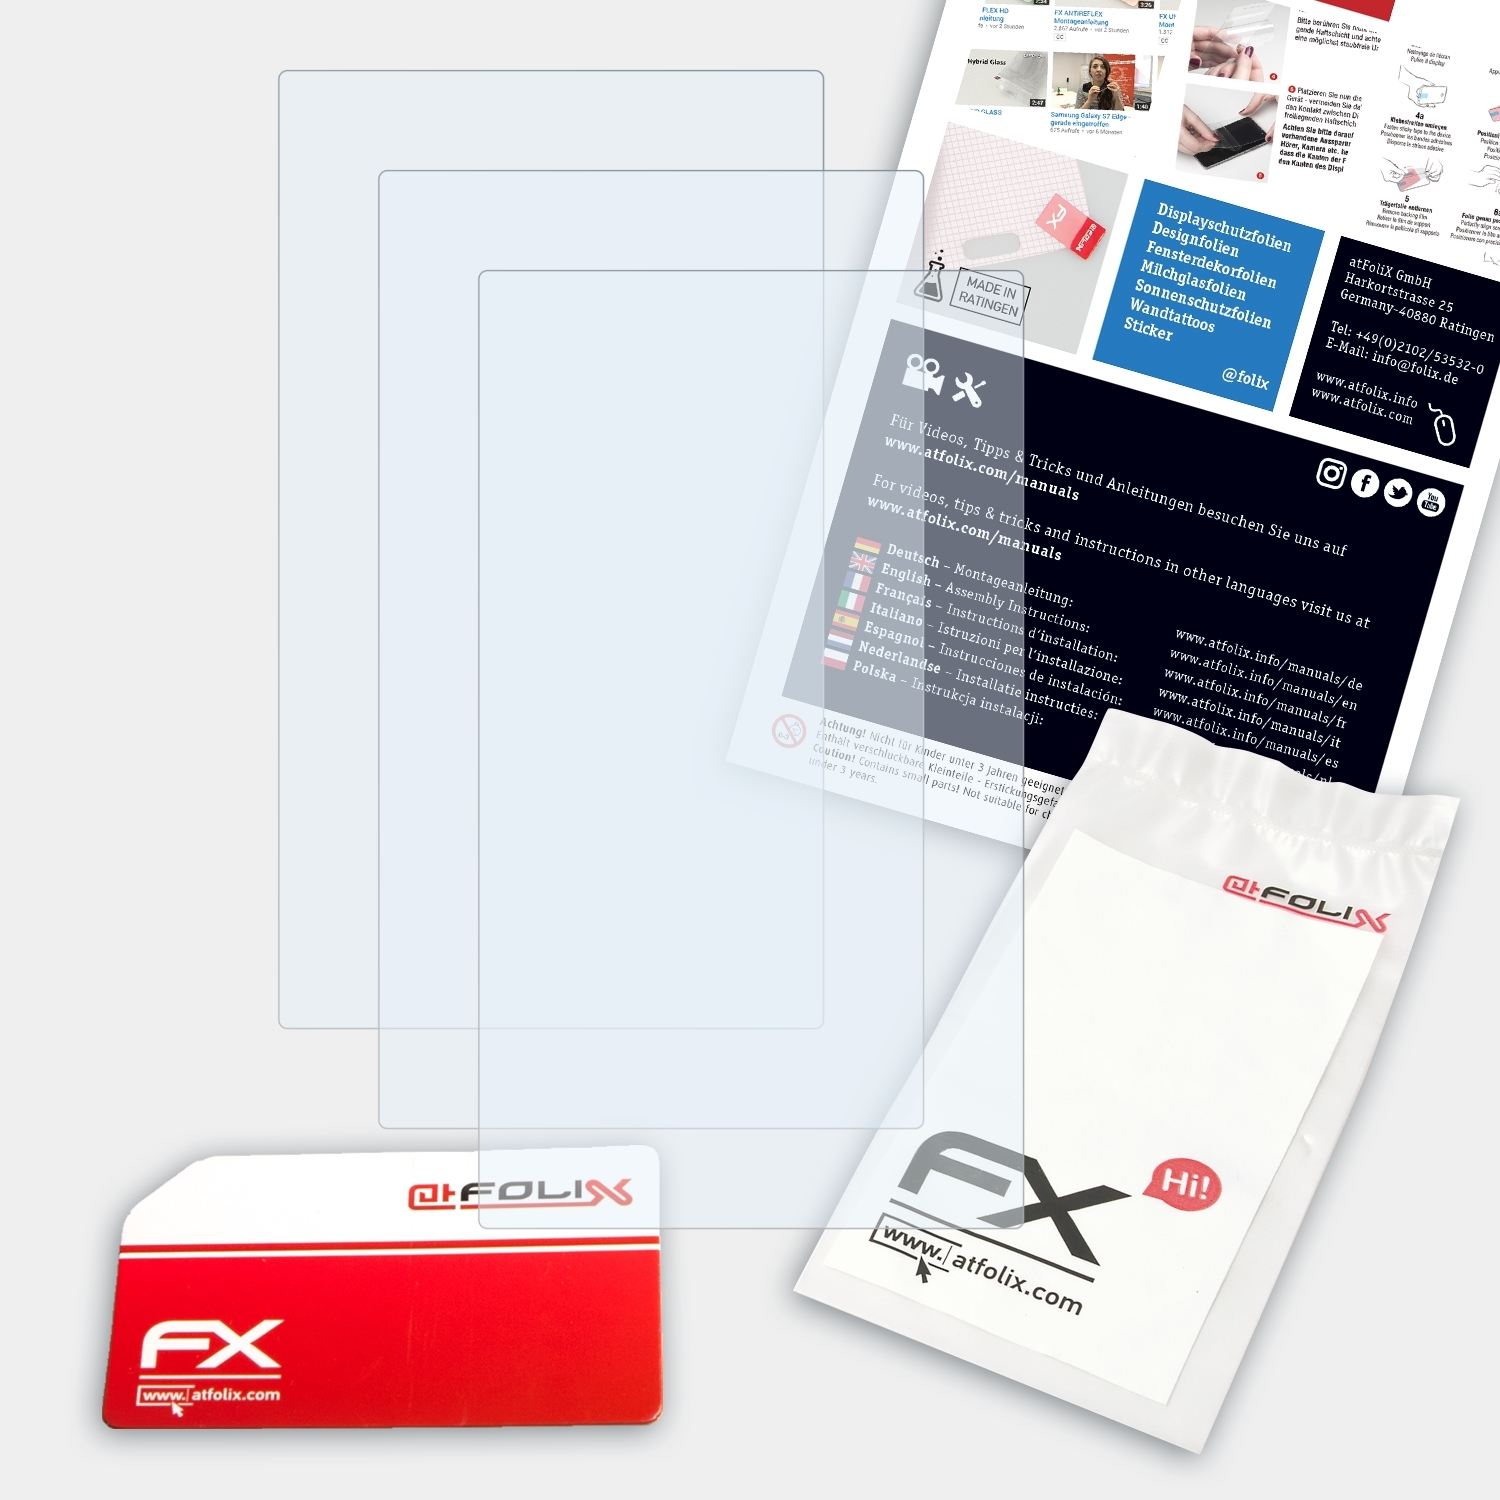 ATFOLIX 3x Garmin nüvi FX-Clear Displayschutz(für 2595)